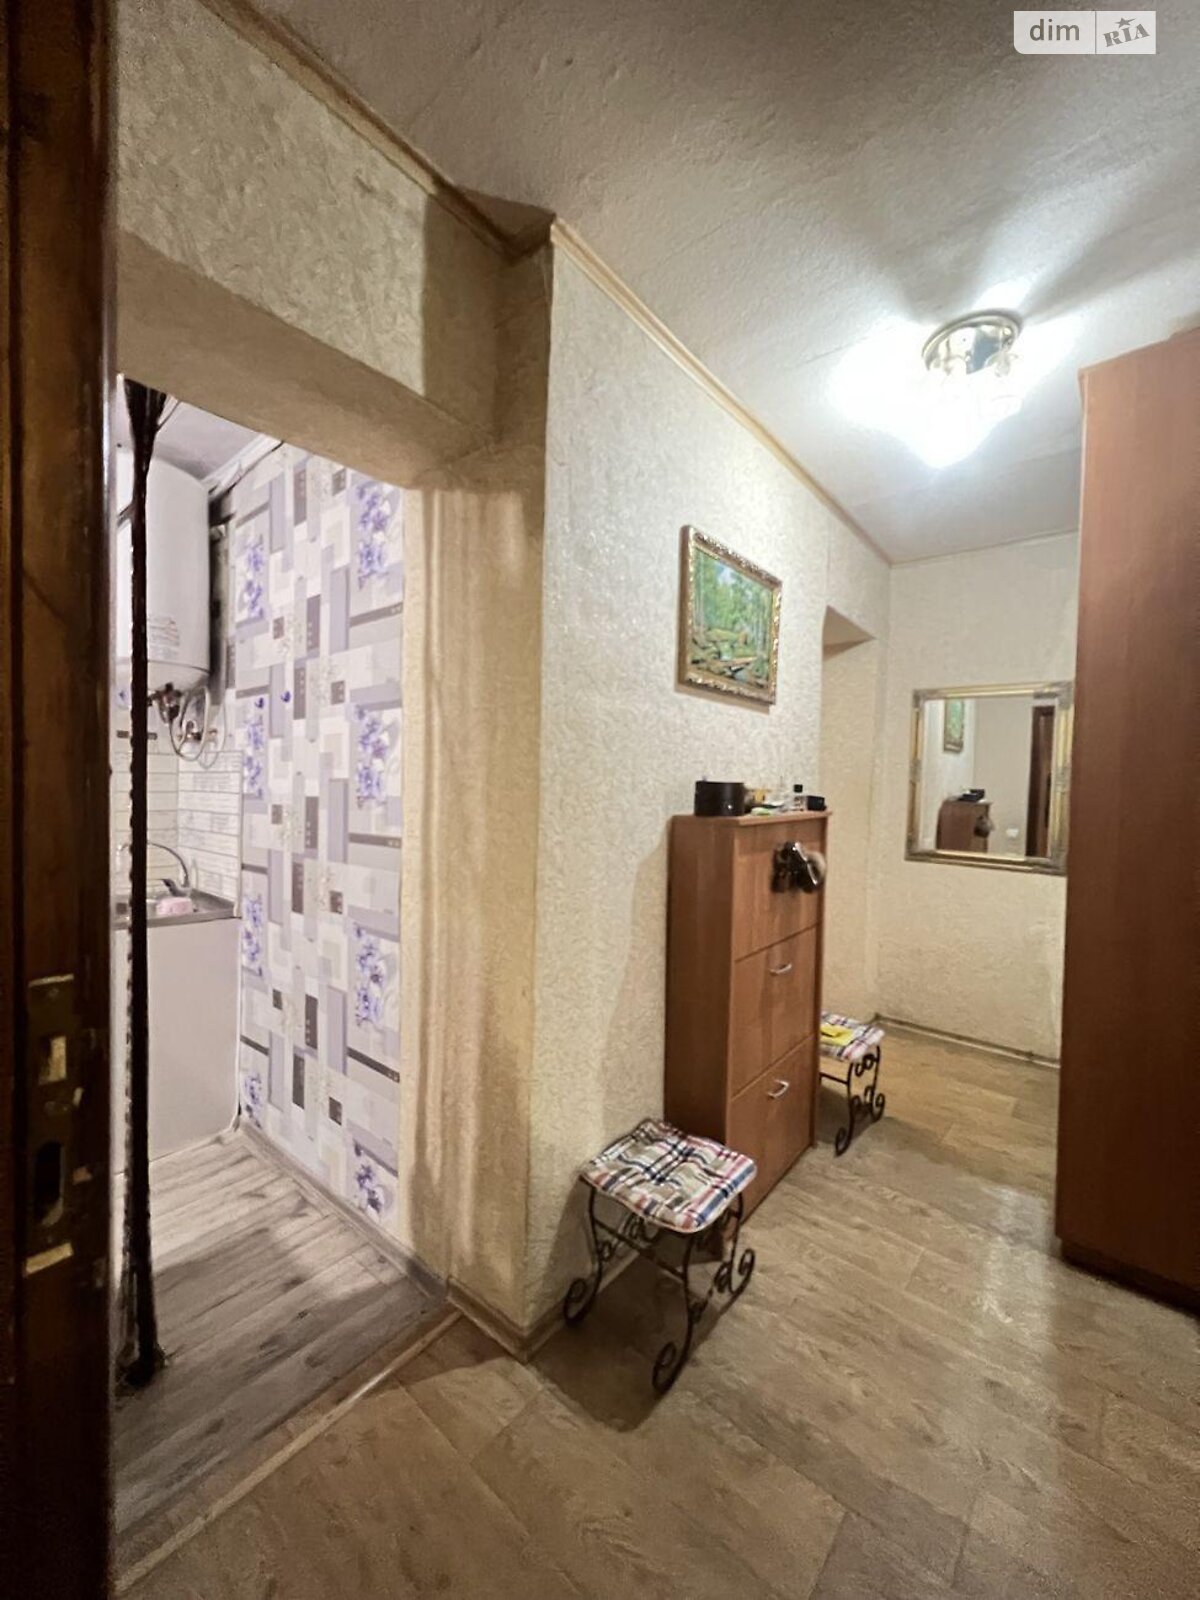 Кімната в Харкові на вул. Краснодарська 171В в районі 627-ий мікрорайон на продаж фото 1